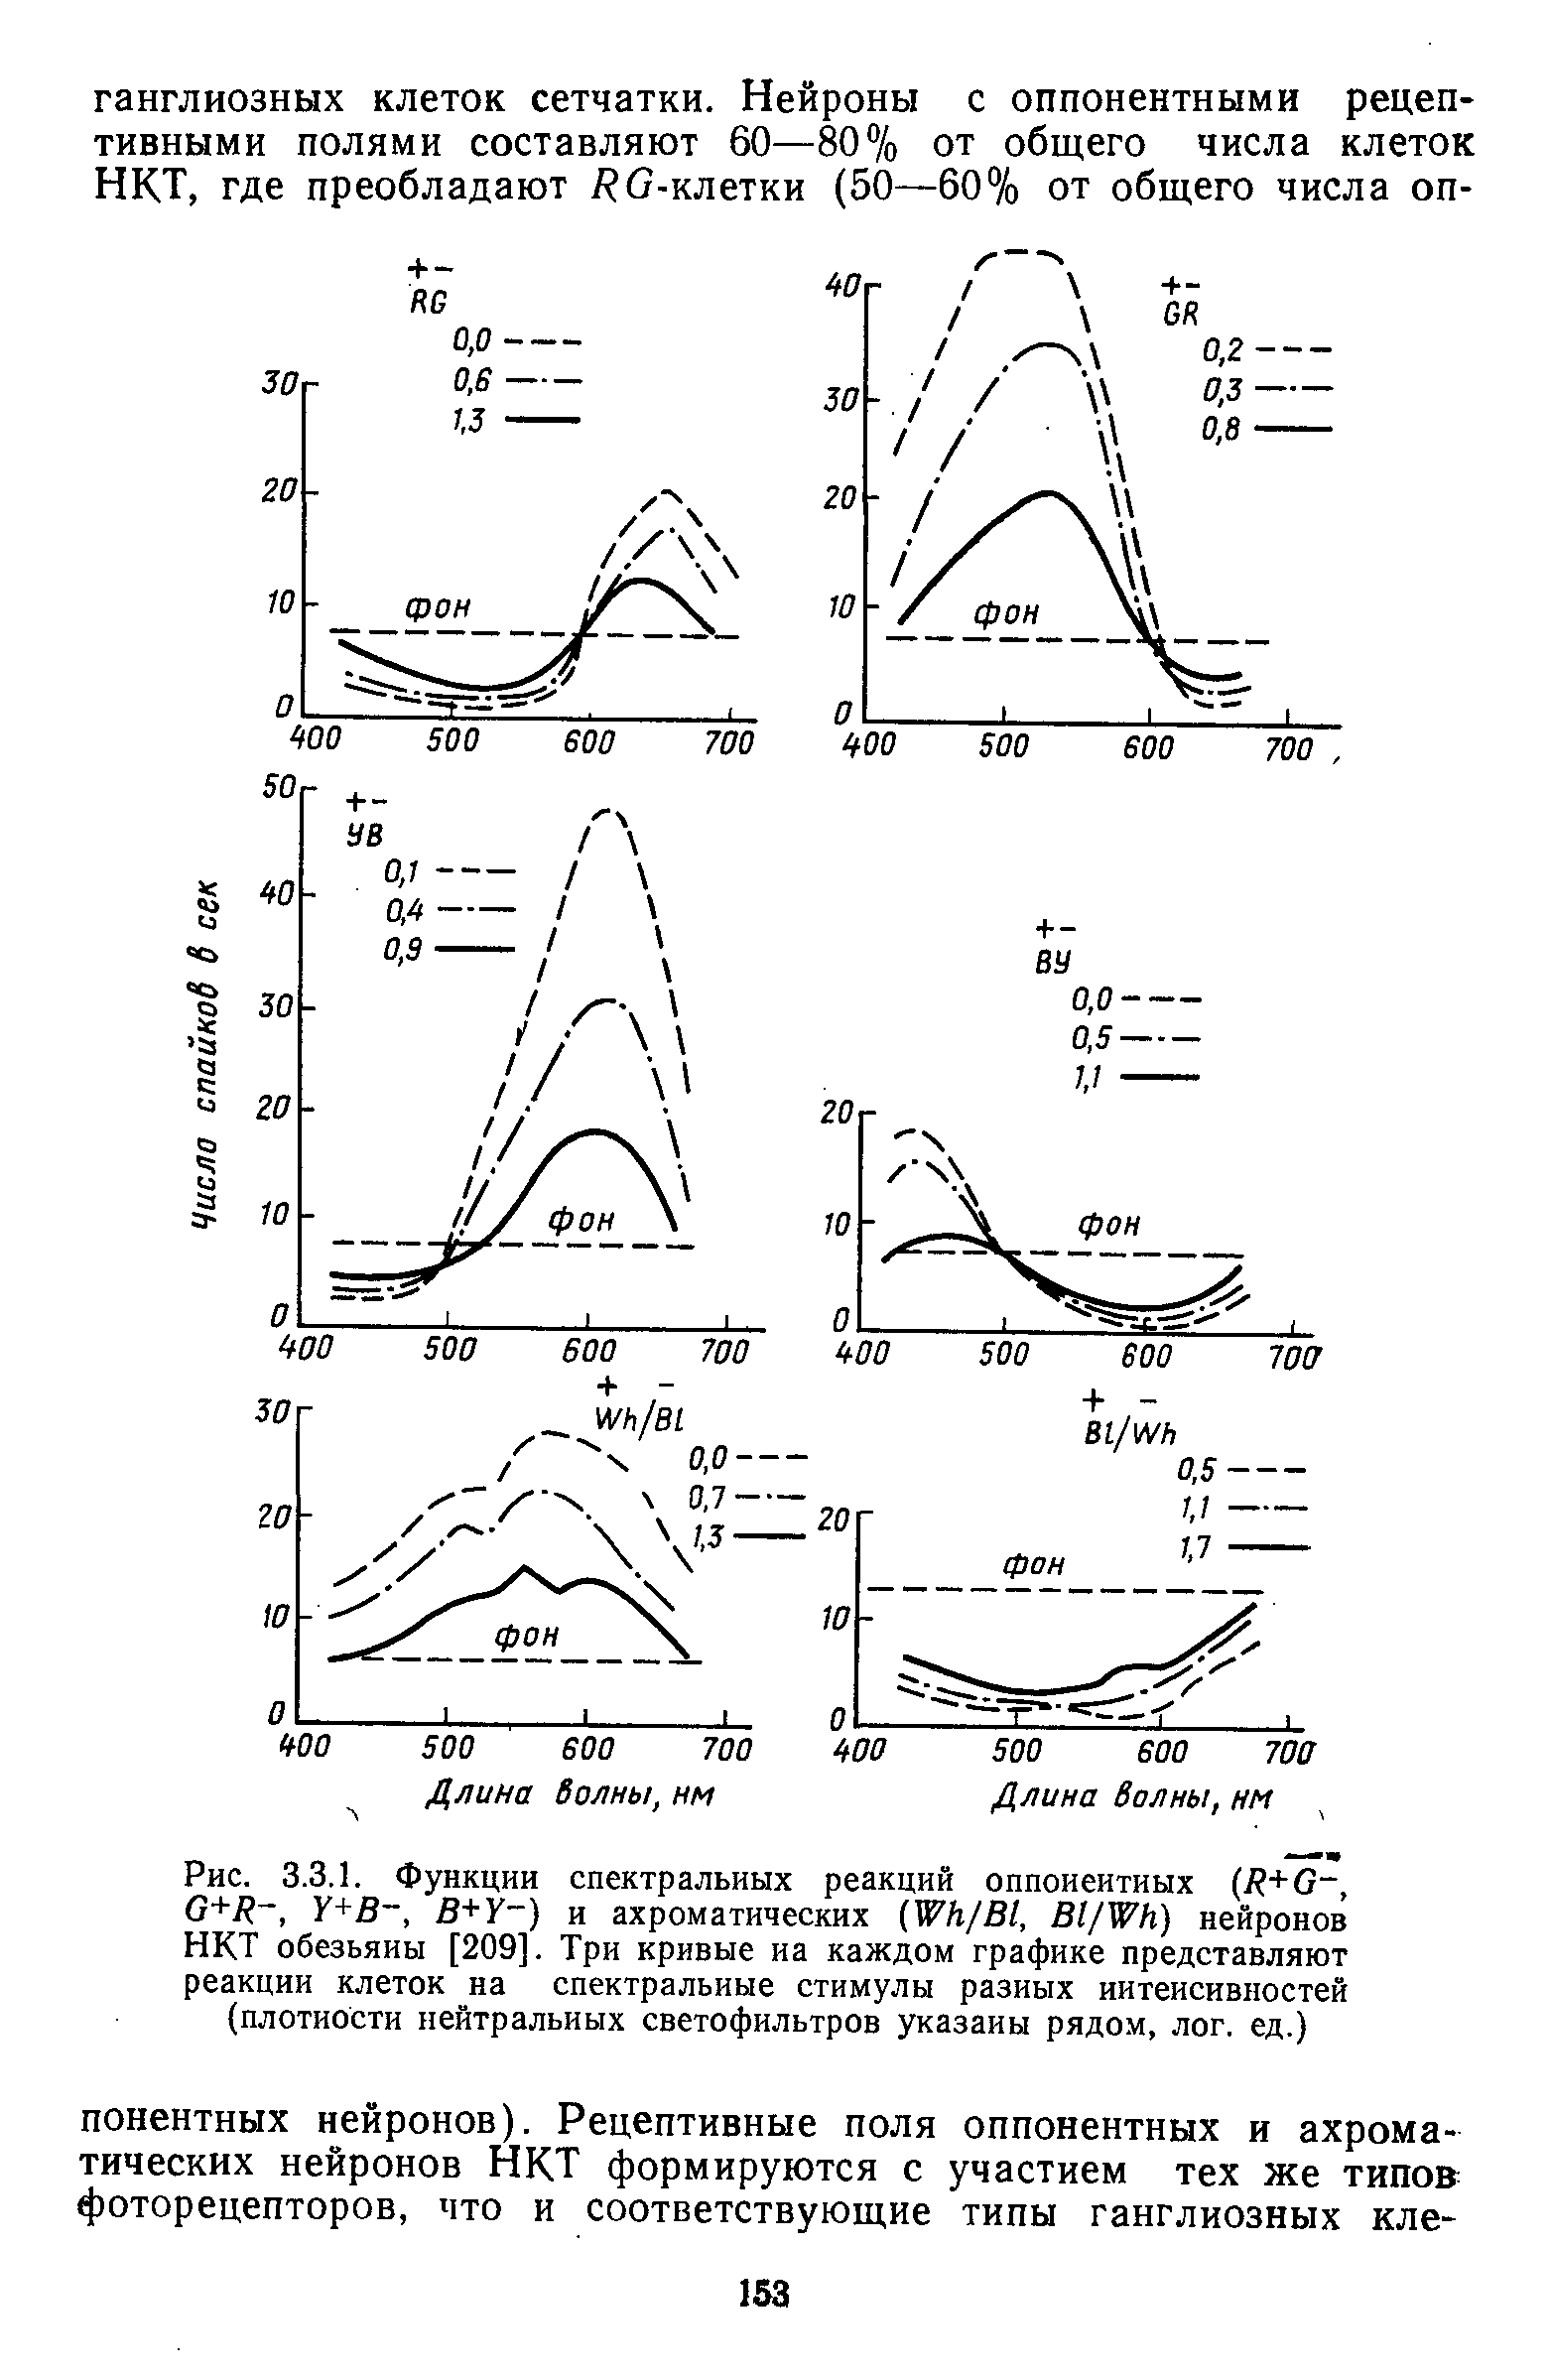 Рис. 3.3.1. Функции спектральных реакций оппоиеитиых (В+б-, б+/ , У+В, В+У ) и ахроматических №к/В1, В1/№Н) нейронов НКТ обезьяны [209]. Три кривые на каждом графике представляют реакции клеток на спектральные стимулы разных интенсивностей (плотности нейтральных светофильтров указаны рядом, лог. ед.)...